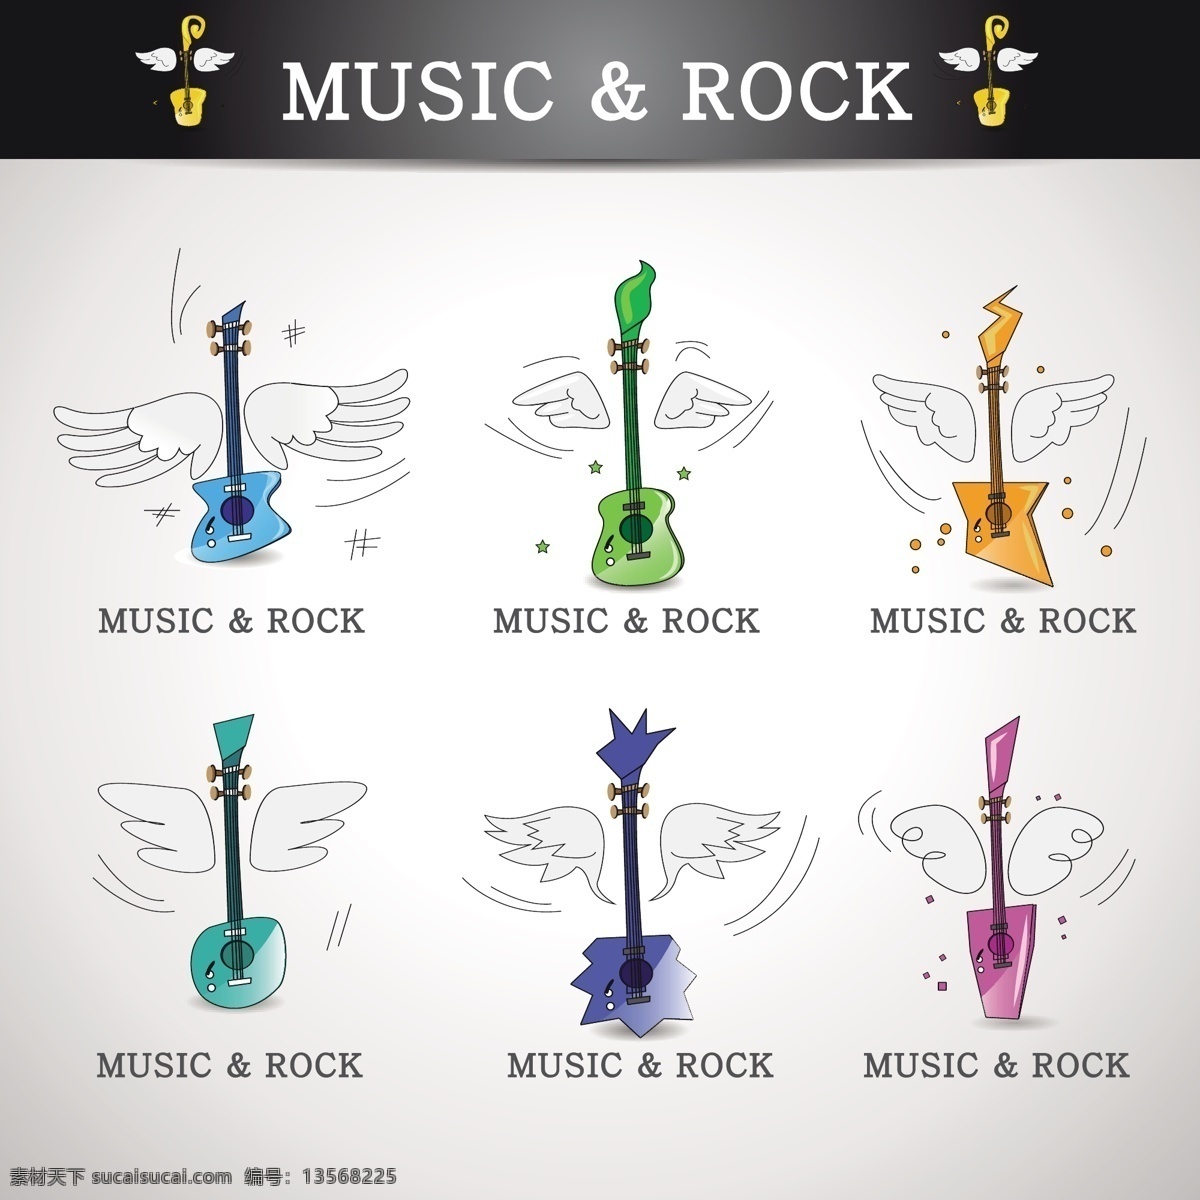 音乐 元素 图标 翅膀 吉他 图标素材 音乐元素 摇滚音乐 音乐元素图标 摇滚乐 手机 app app图标